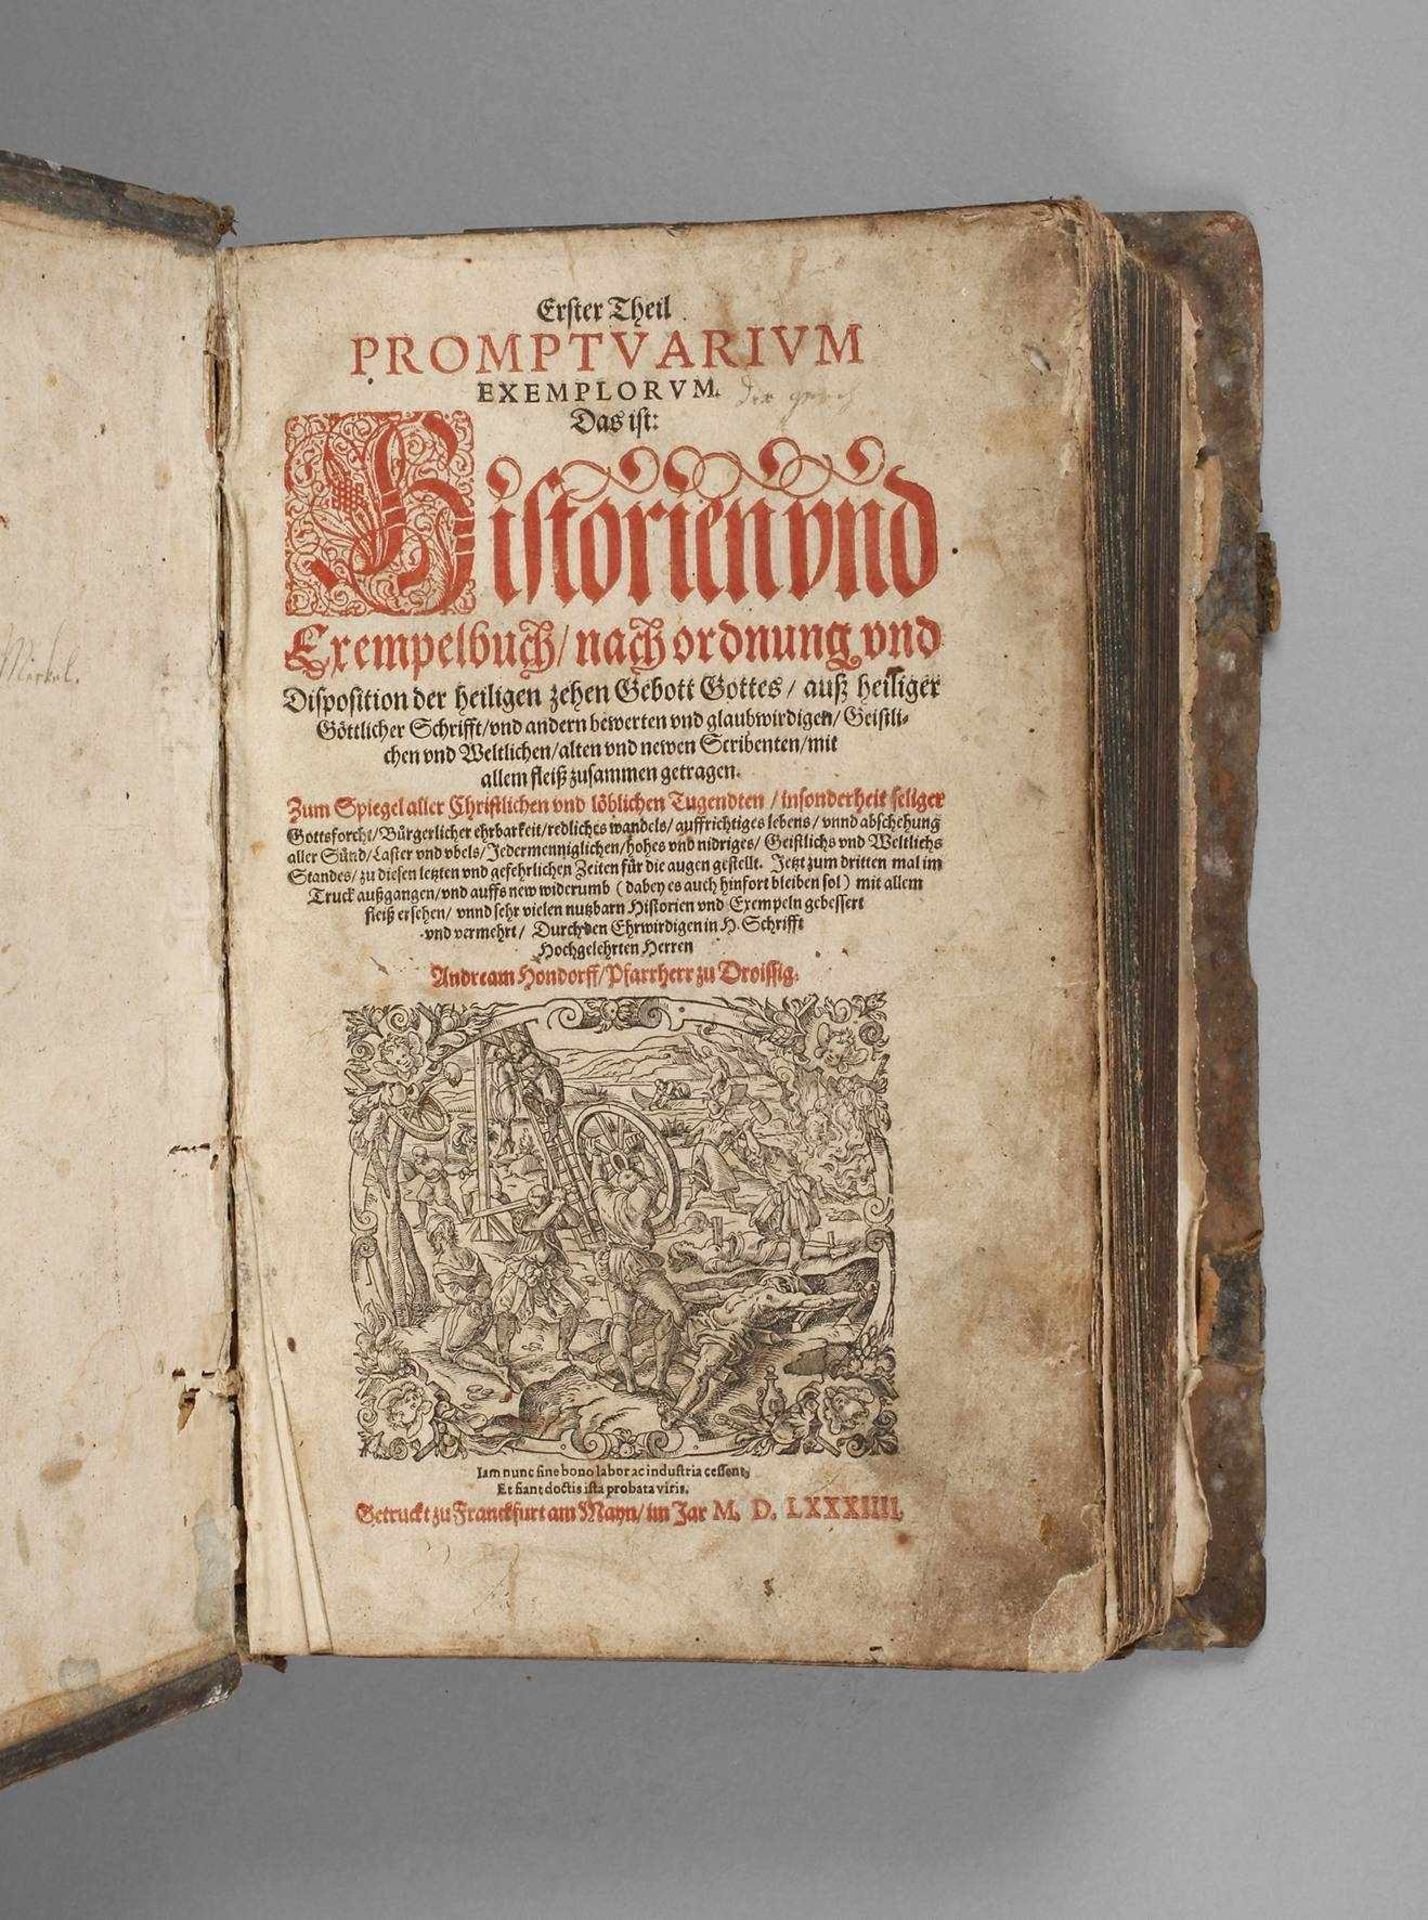 Promptuarium ExemplorumDas ist Historien- und Exempelbuch, nach Ordnung und Disposition der Heiligen